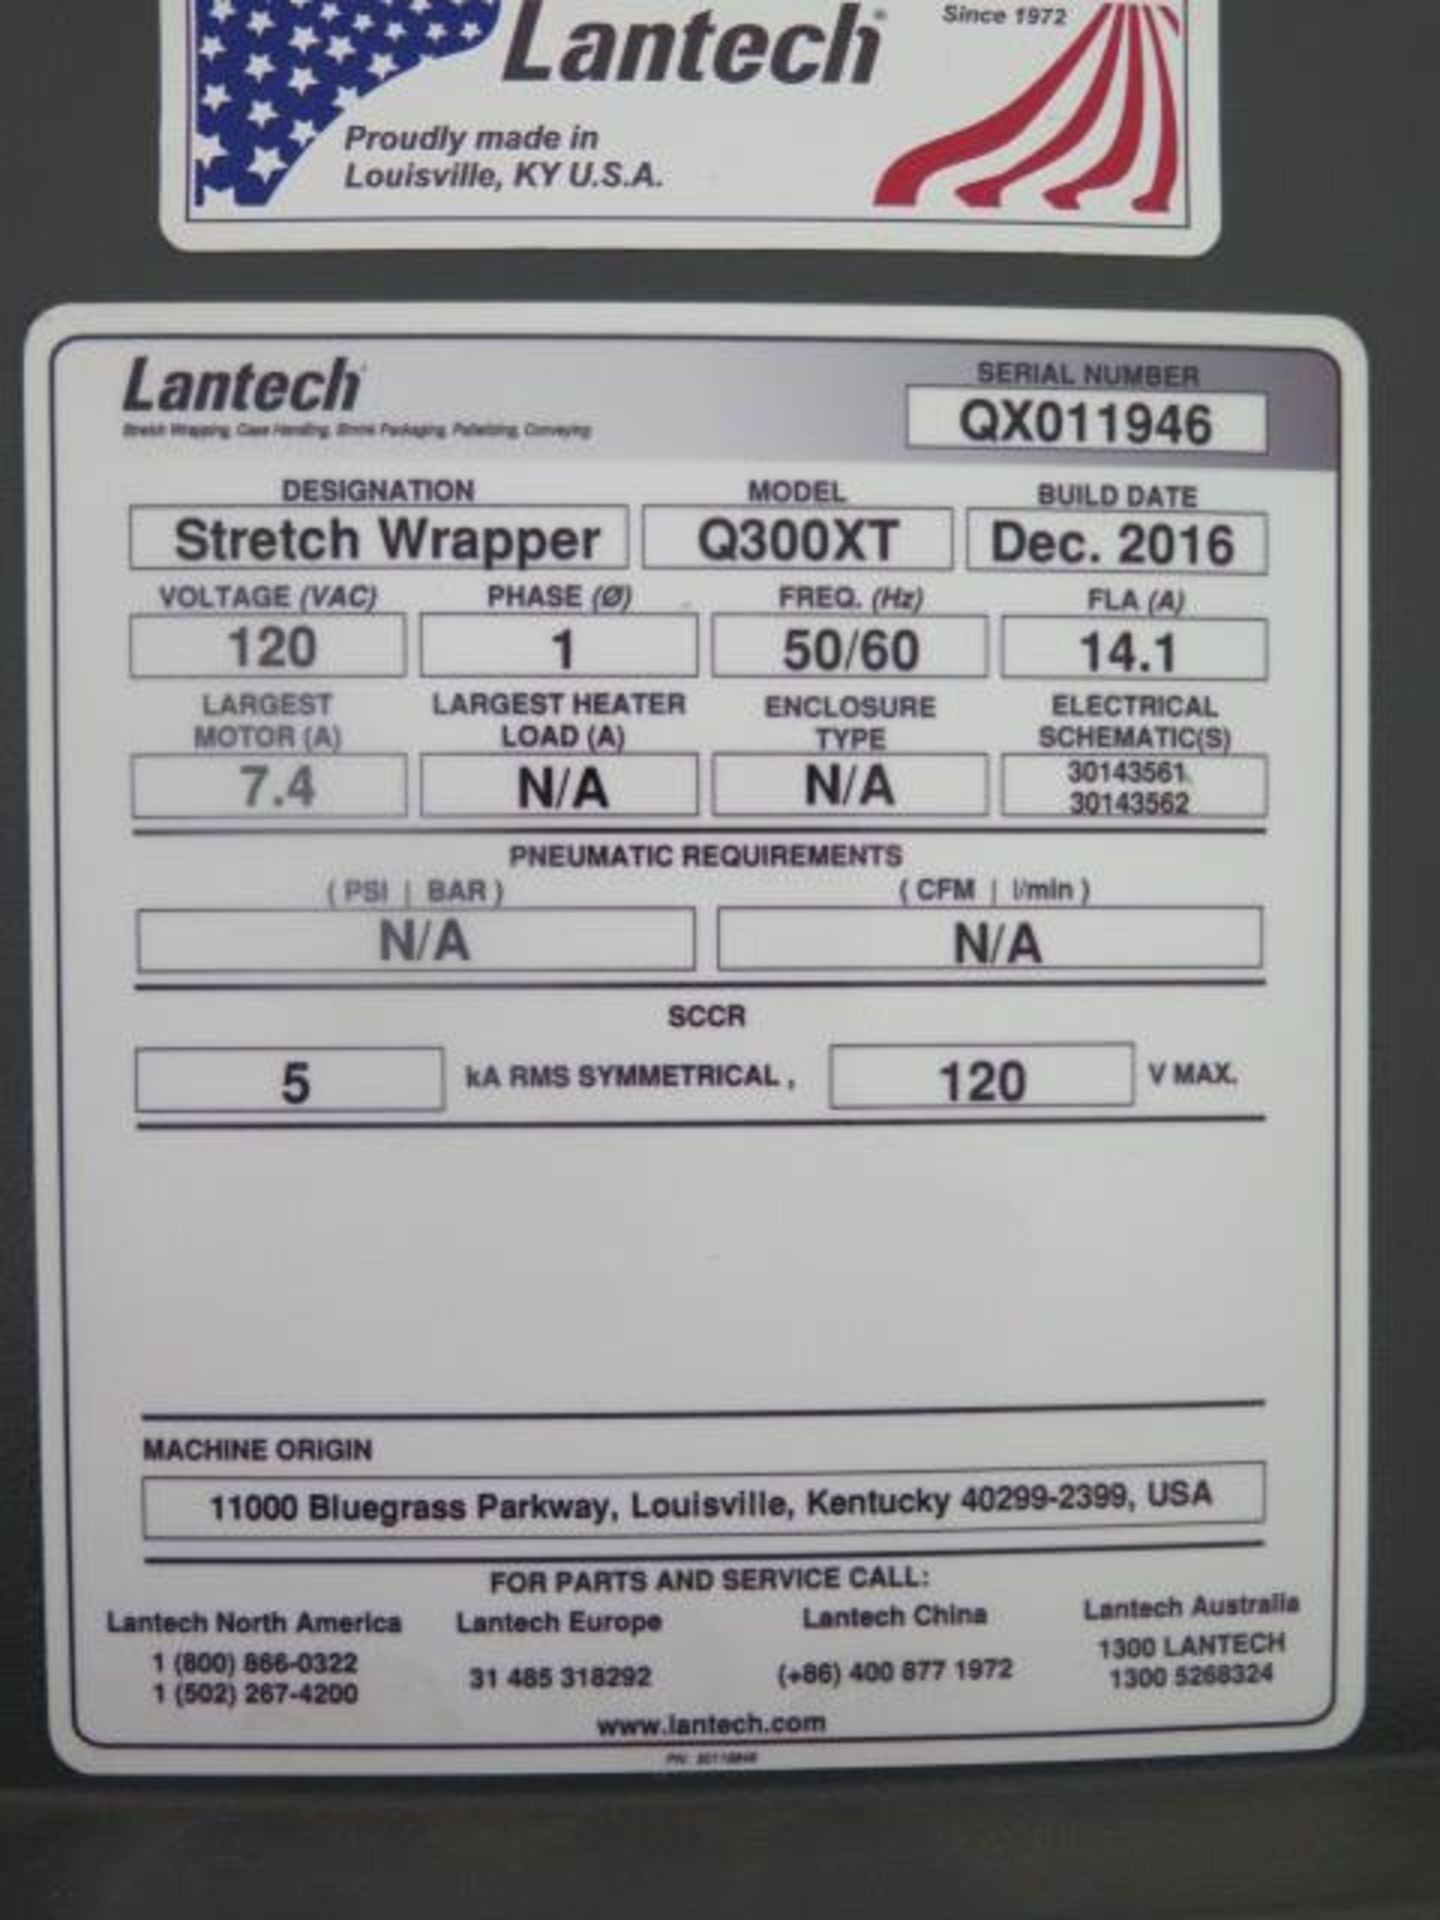 Dec/2016 Lantech Q300XT Pallet Stretch Wrapper s/n QX011946 w/ Lantech Controls, SOLD AS IS - Image 12 of 12